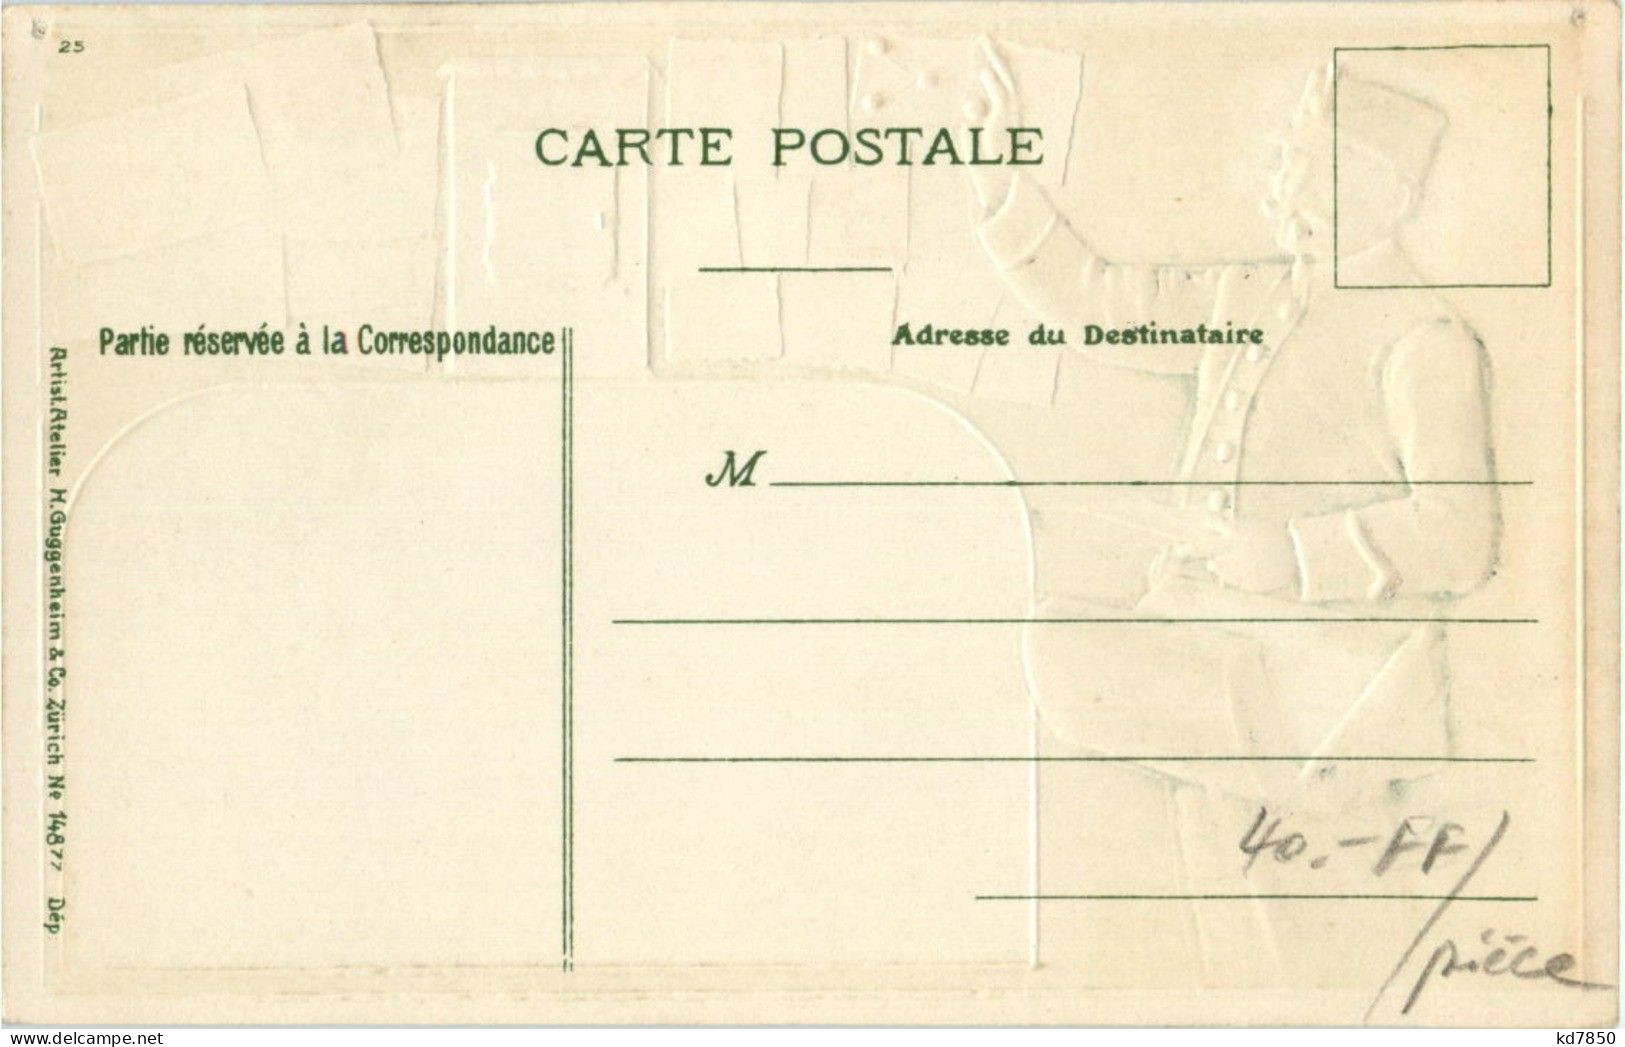 Postbote - Briefmarken - Litho - Post